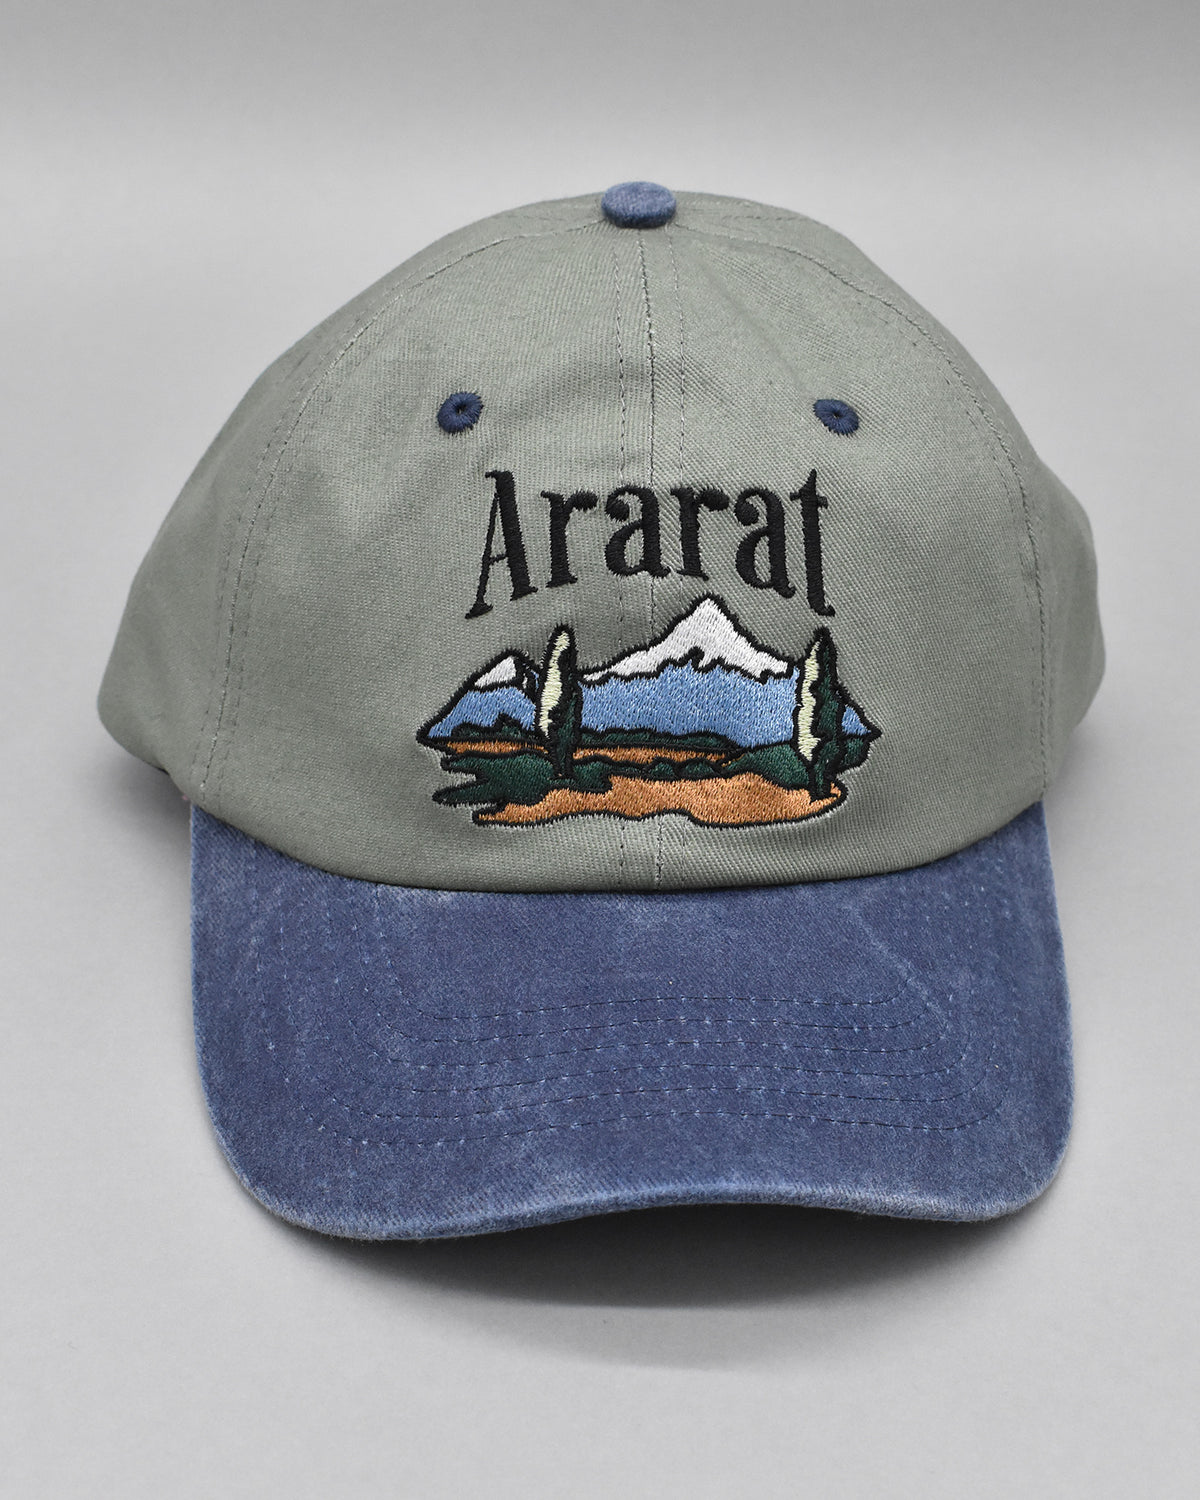 Forest Ararat Retro Dad Cap